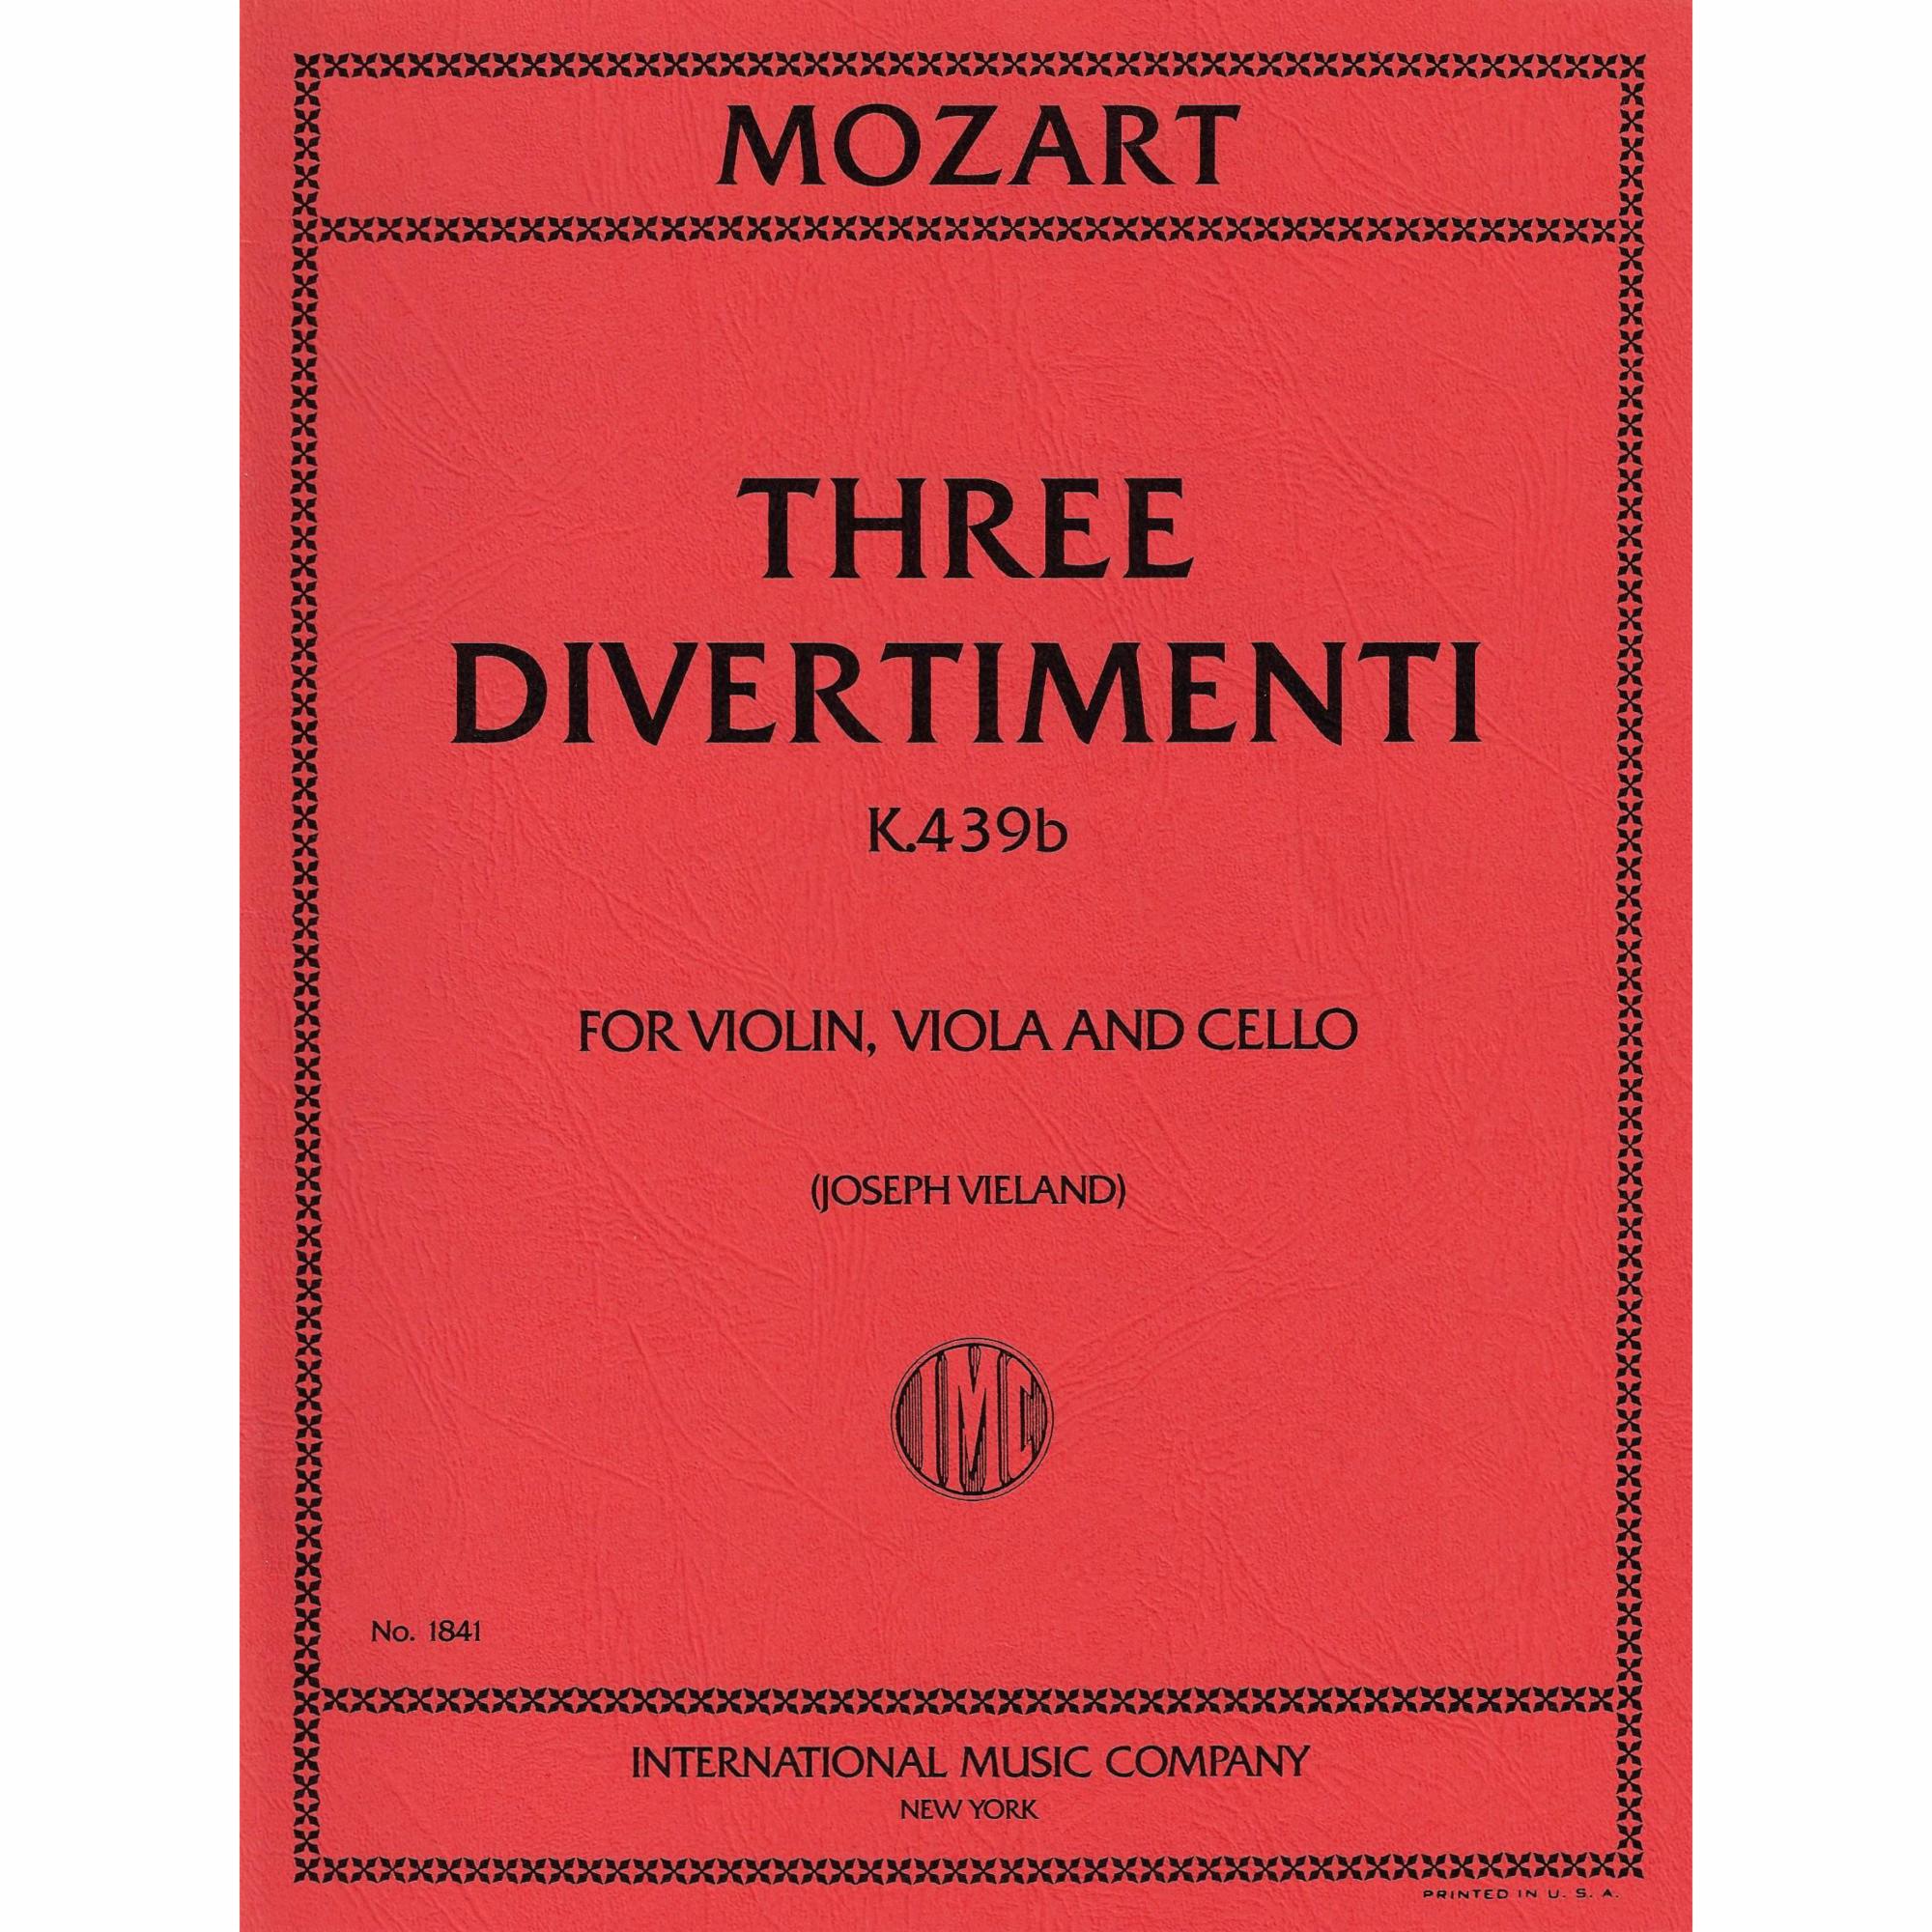 Mozart -- Three Divertimenti, K. 439b for Violin, Viola, and Cello